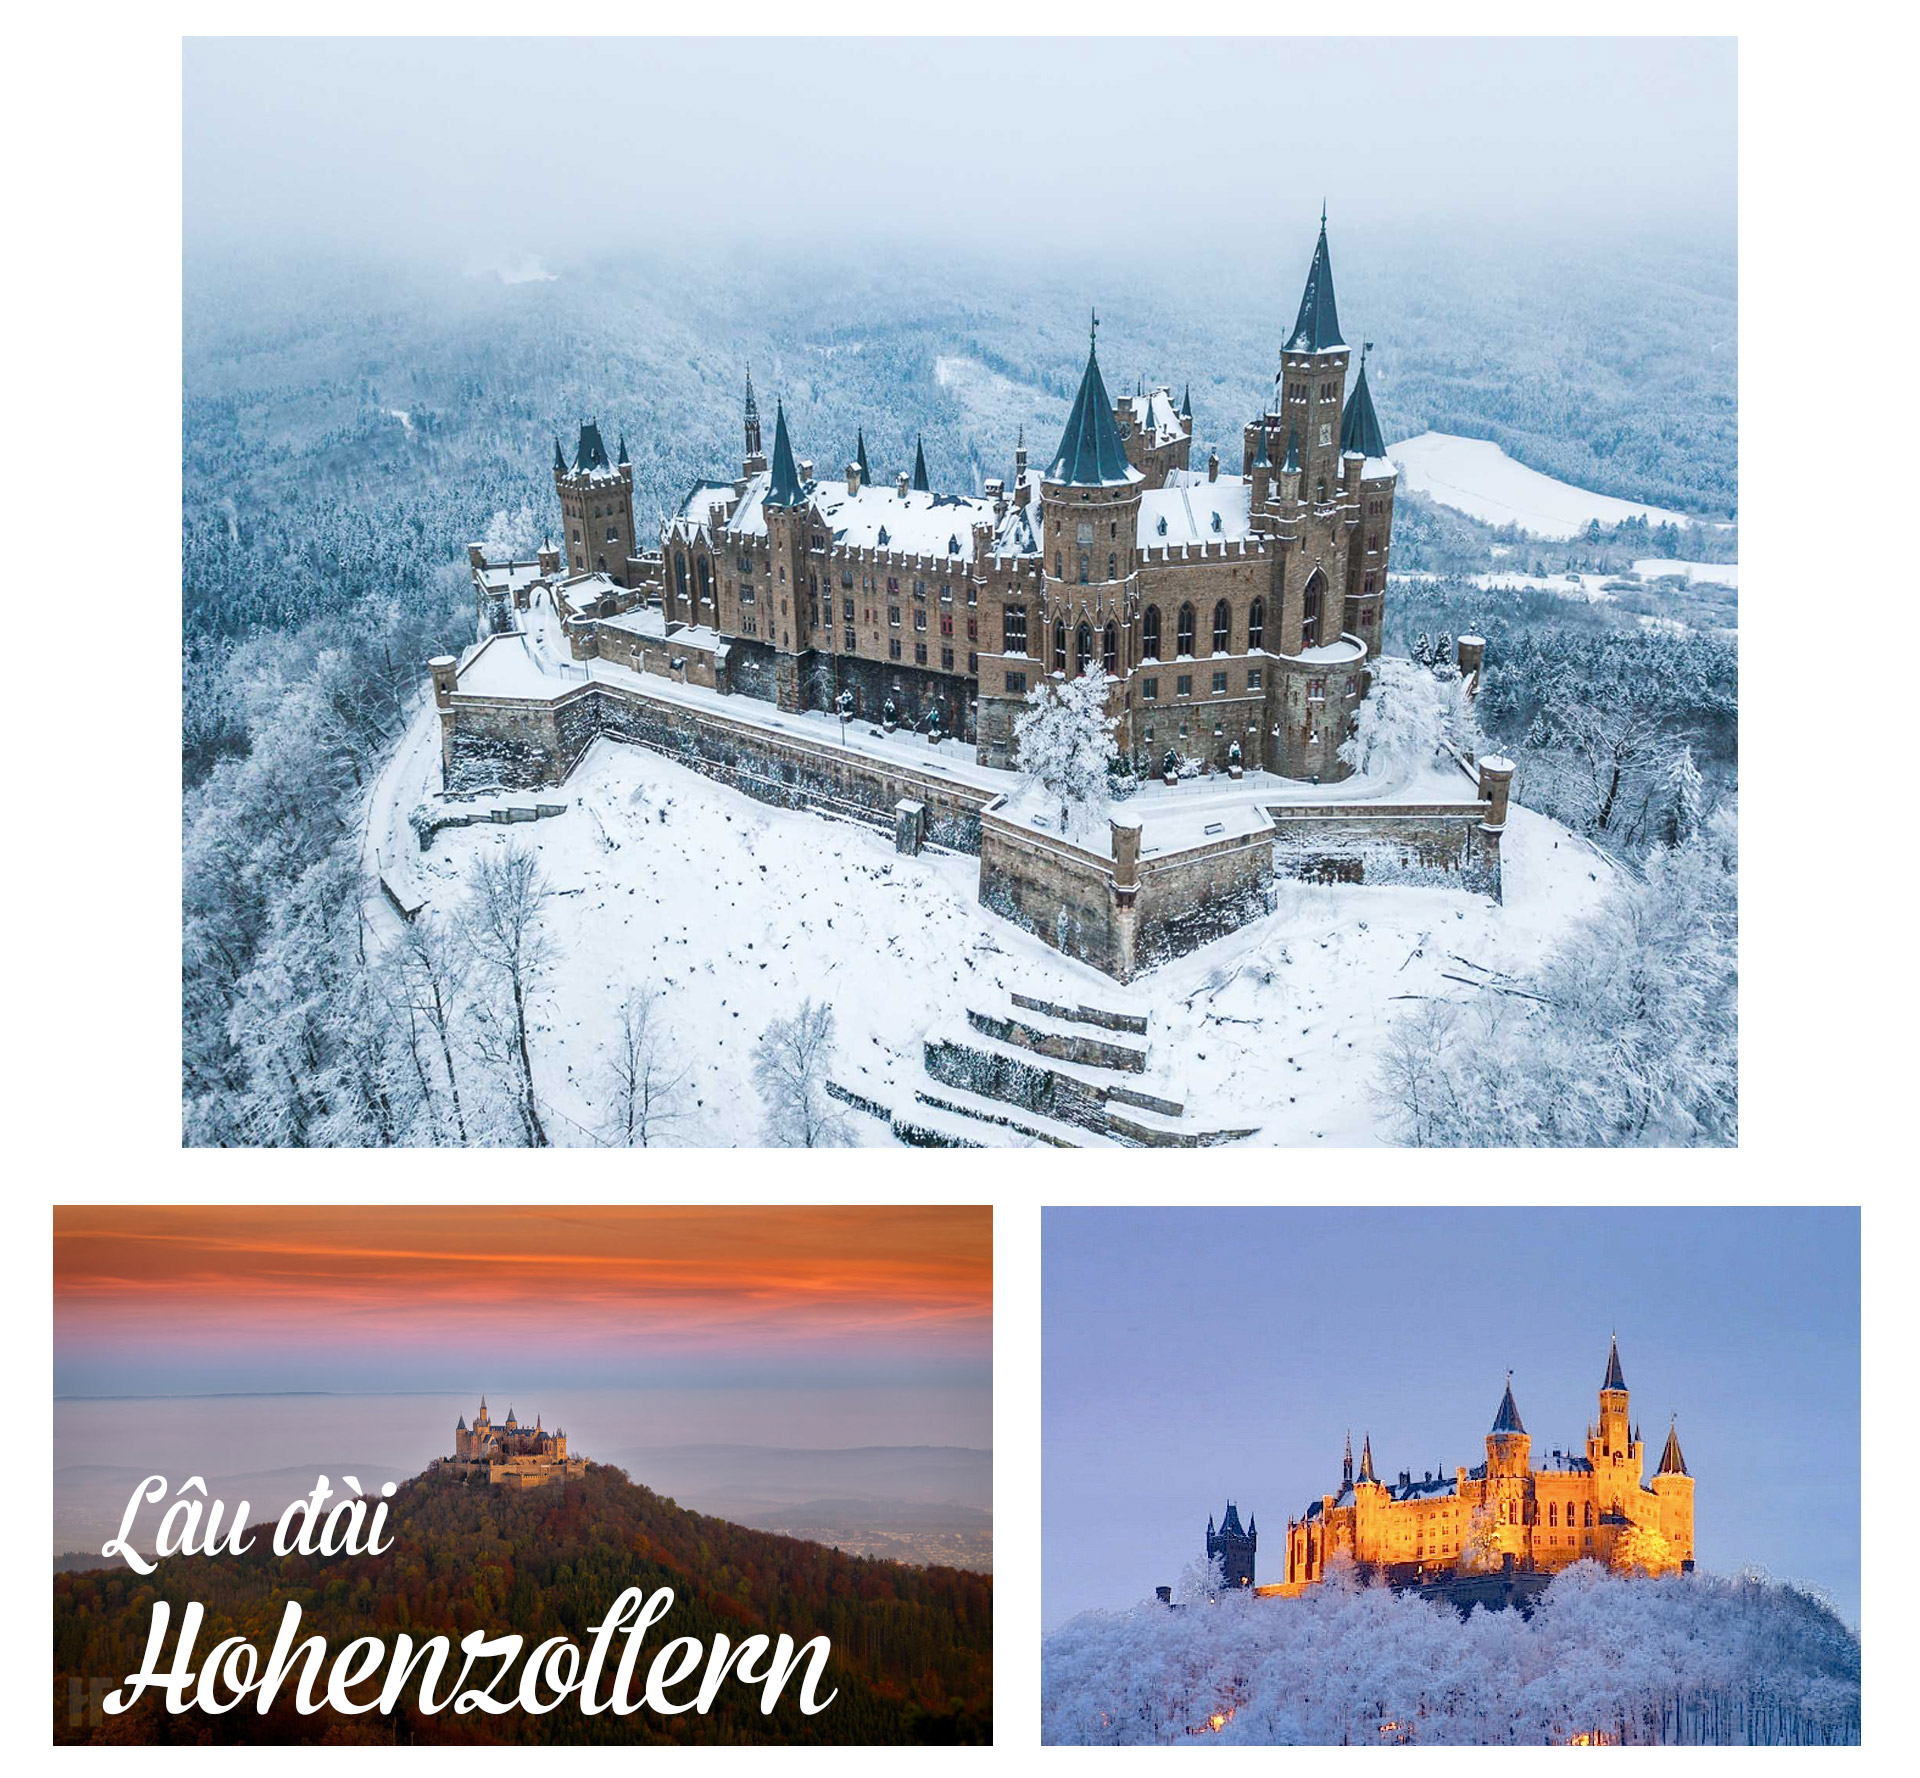 17 lâu đài cổ tích châu Âu đáng đến thăm vào mùa đông - 3